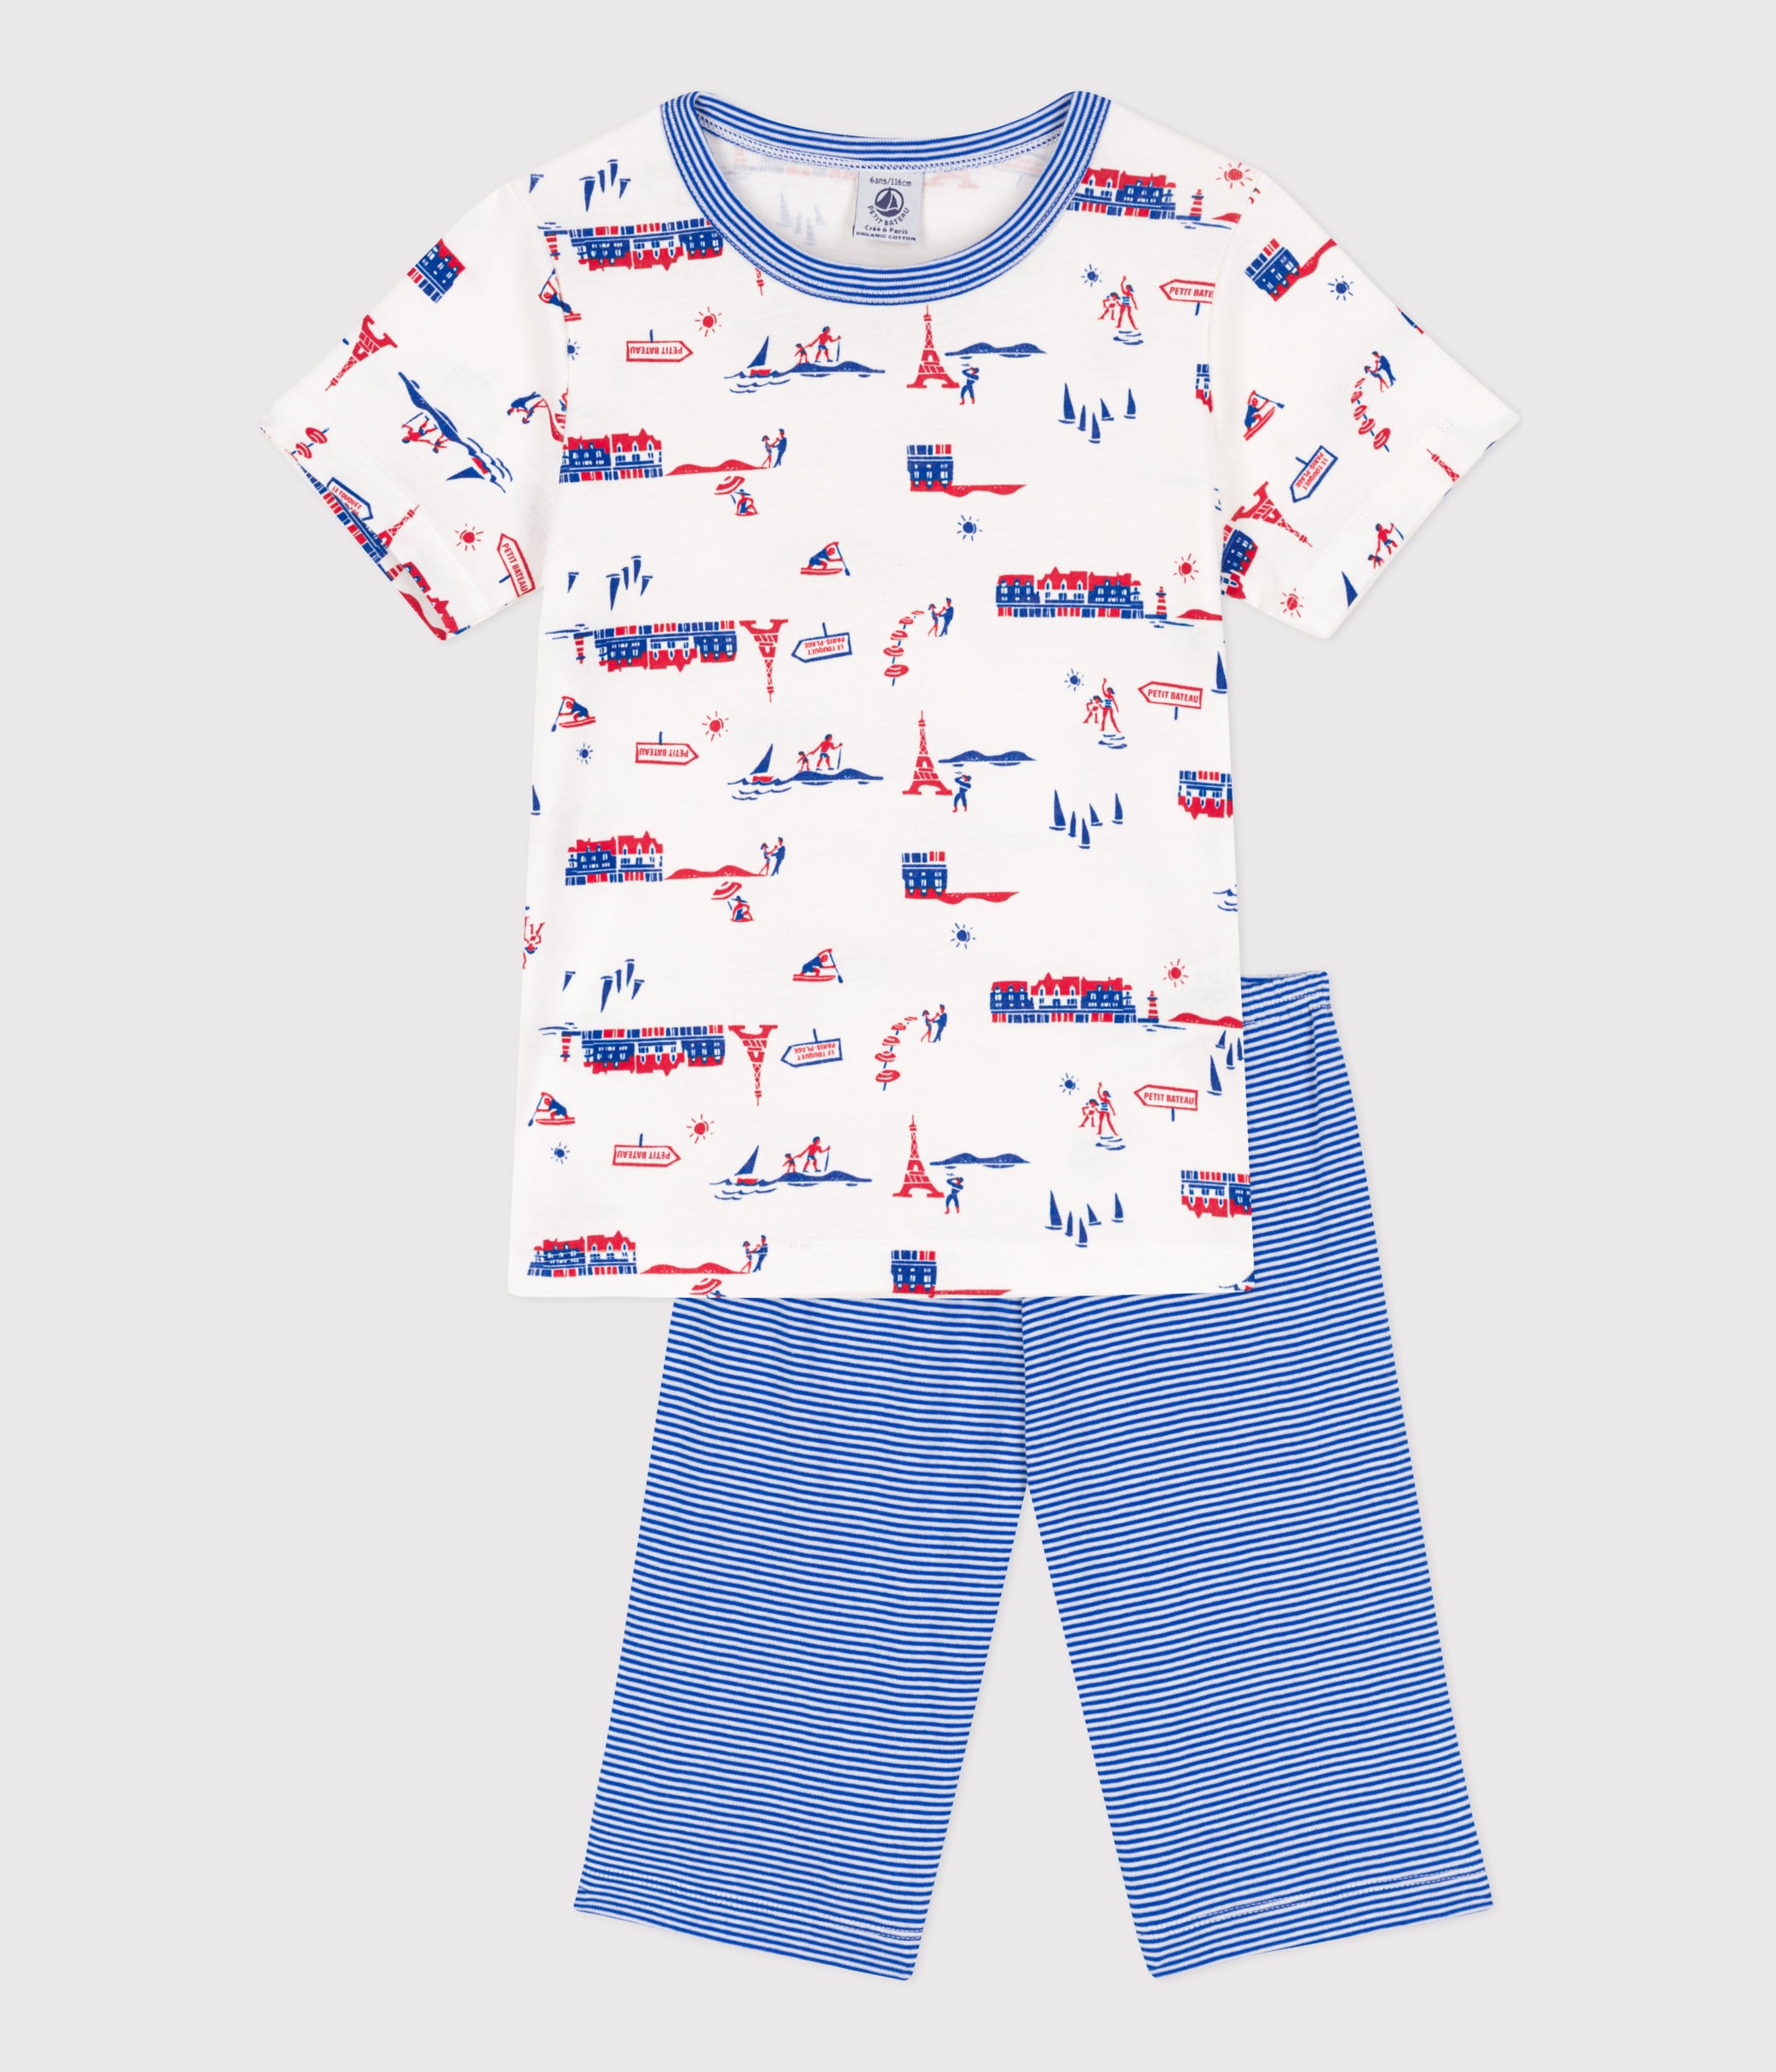 プリント半袖パジャマ | ベビー服・子供服通販のPETTIT BATEAU【公式】